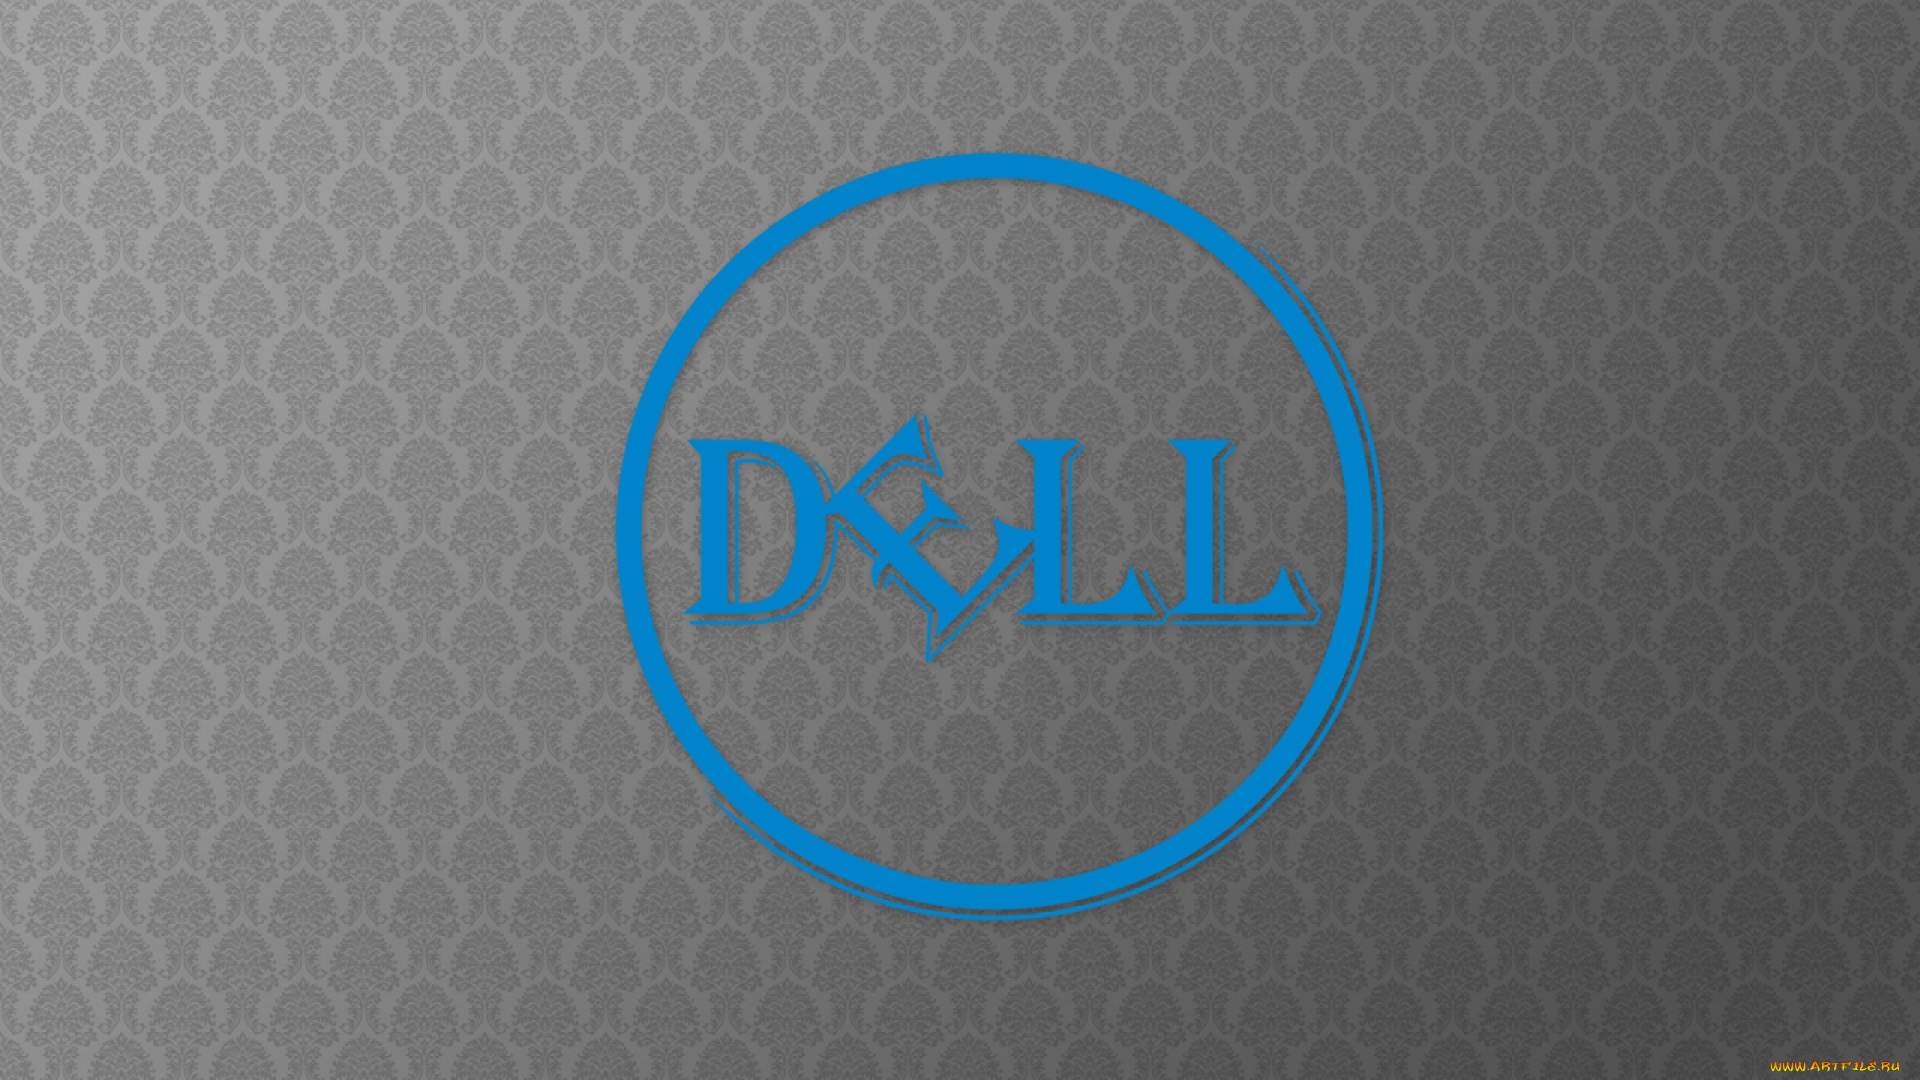 компьютеры, dell, логотип, фон